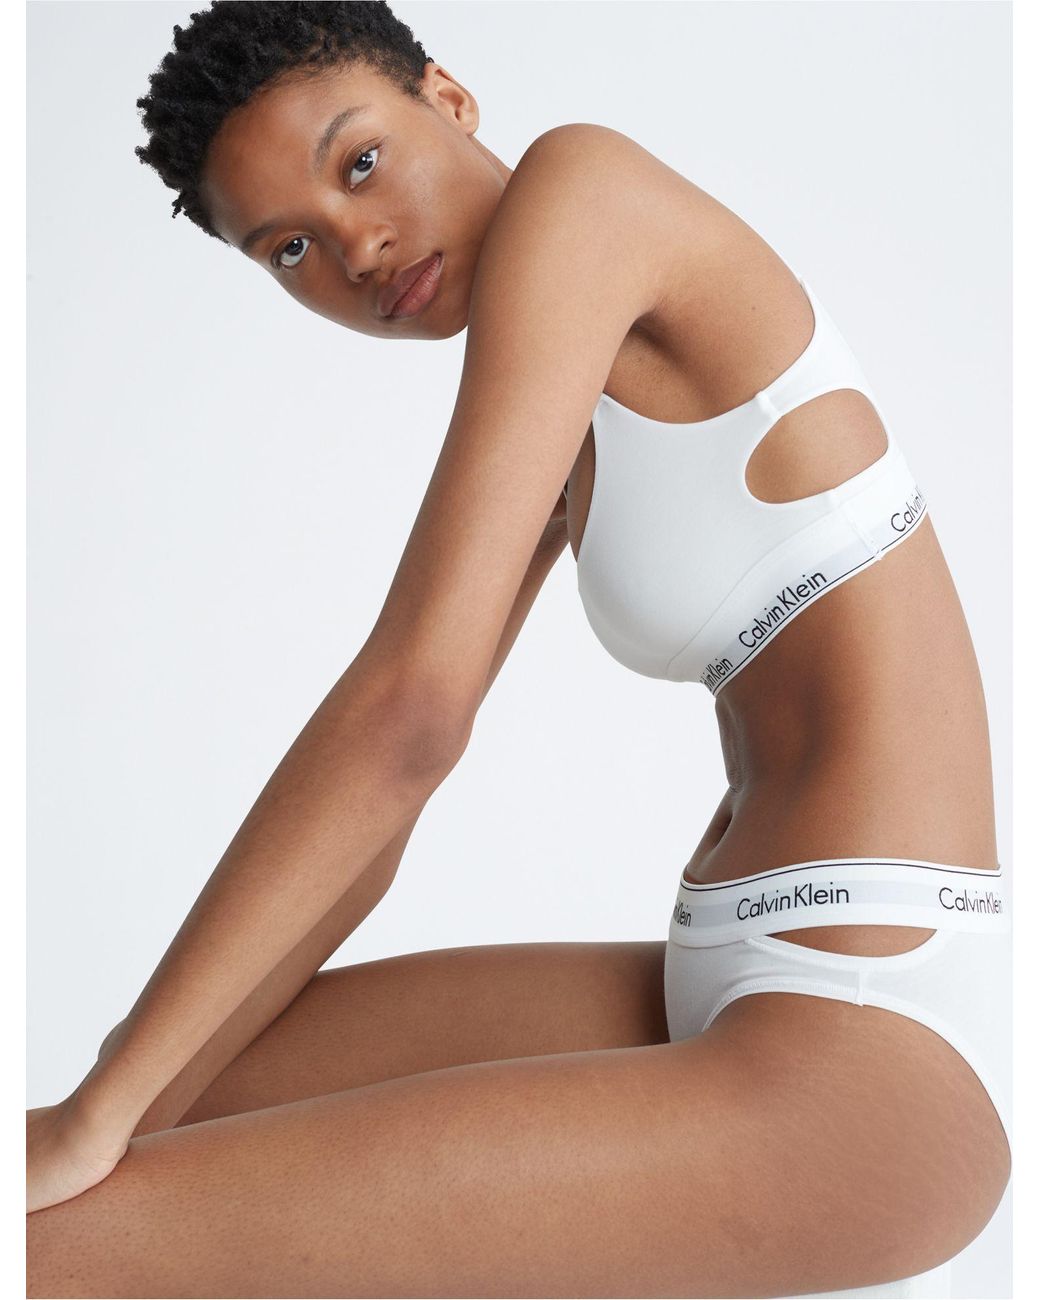  Calvin Klein Girl's Modern Cotton Bralette Underwear